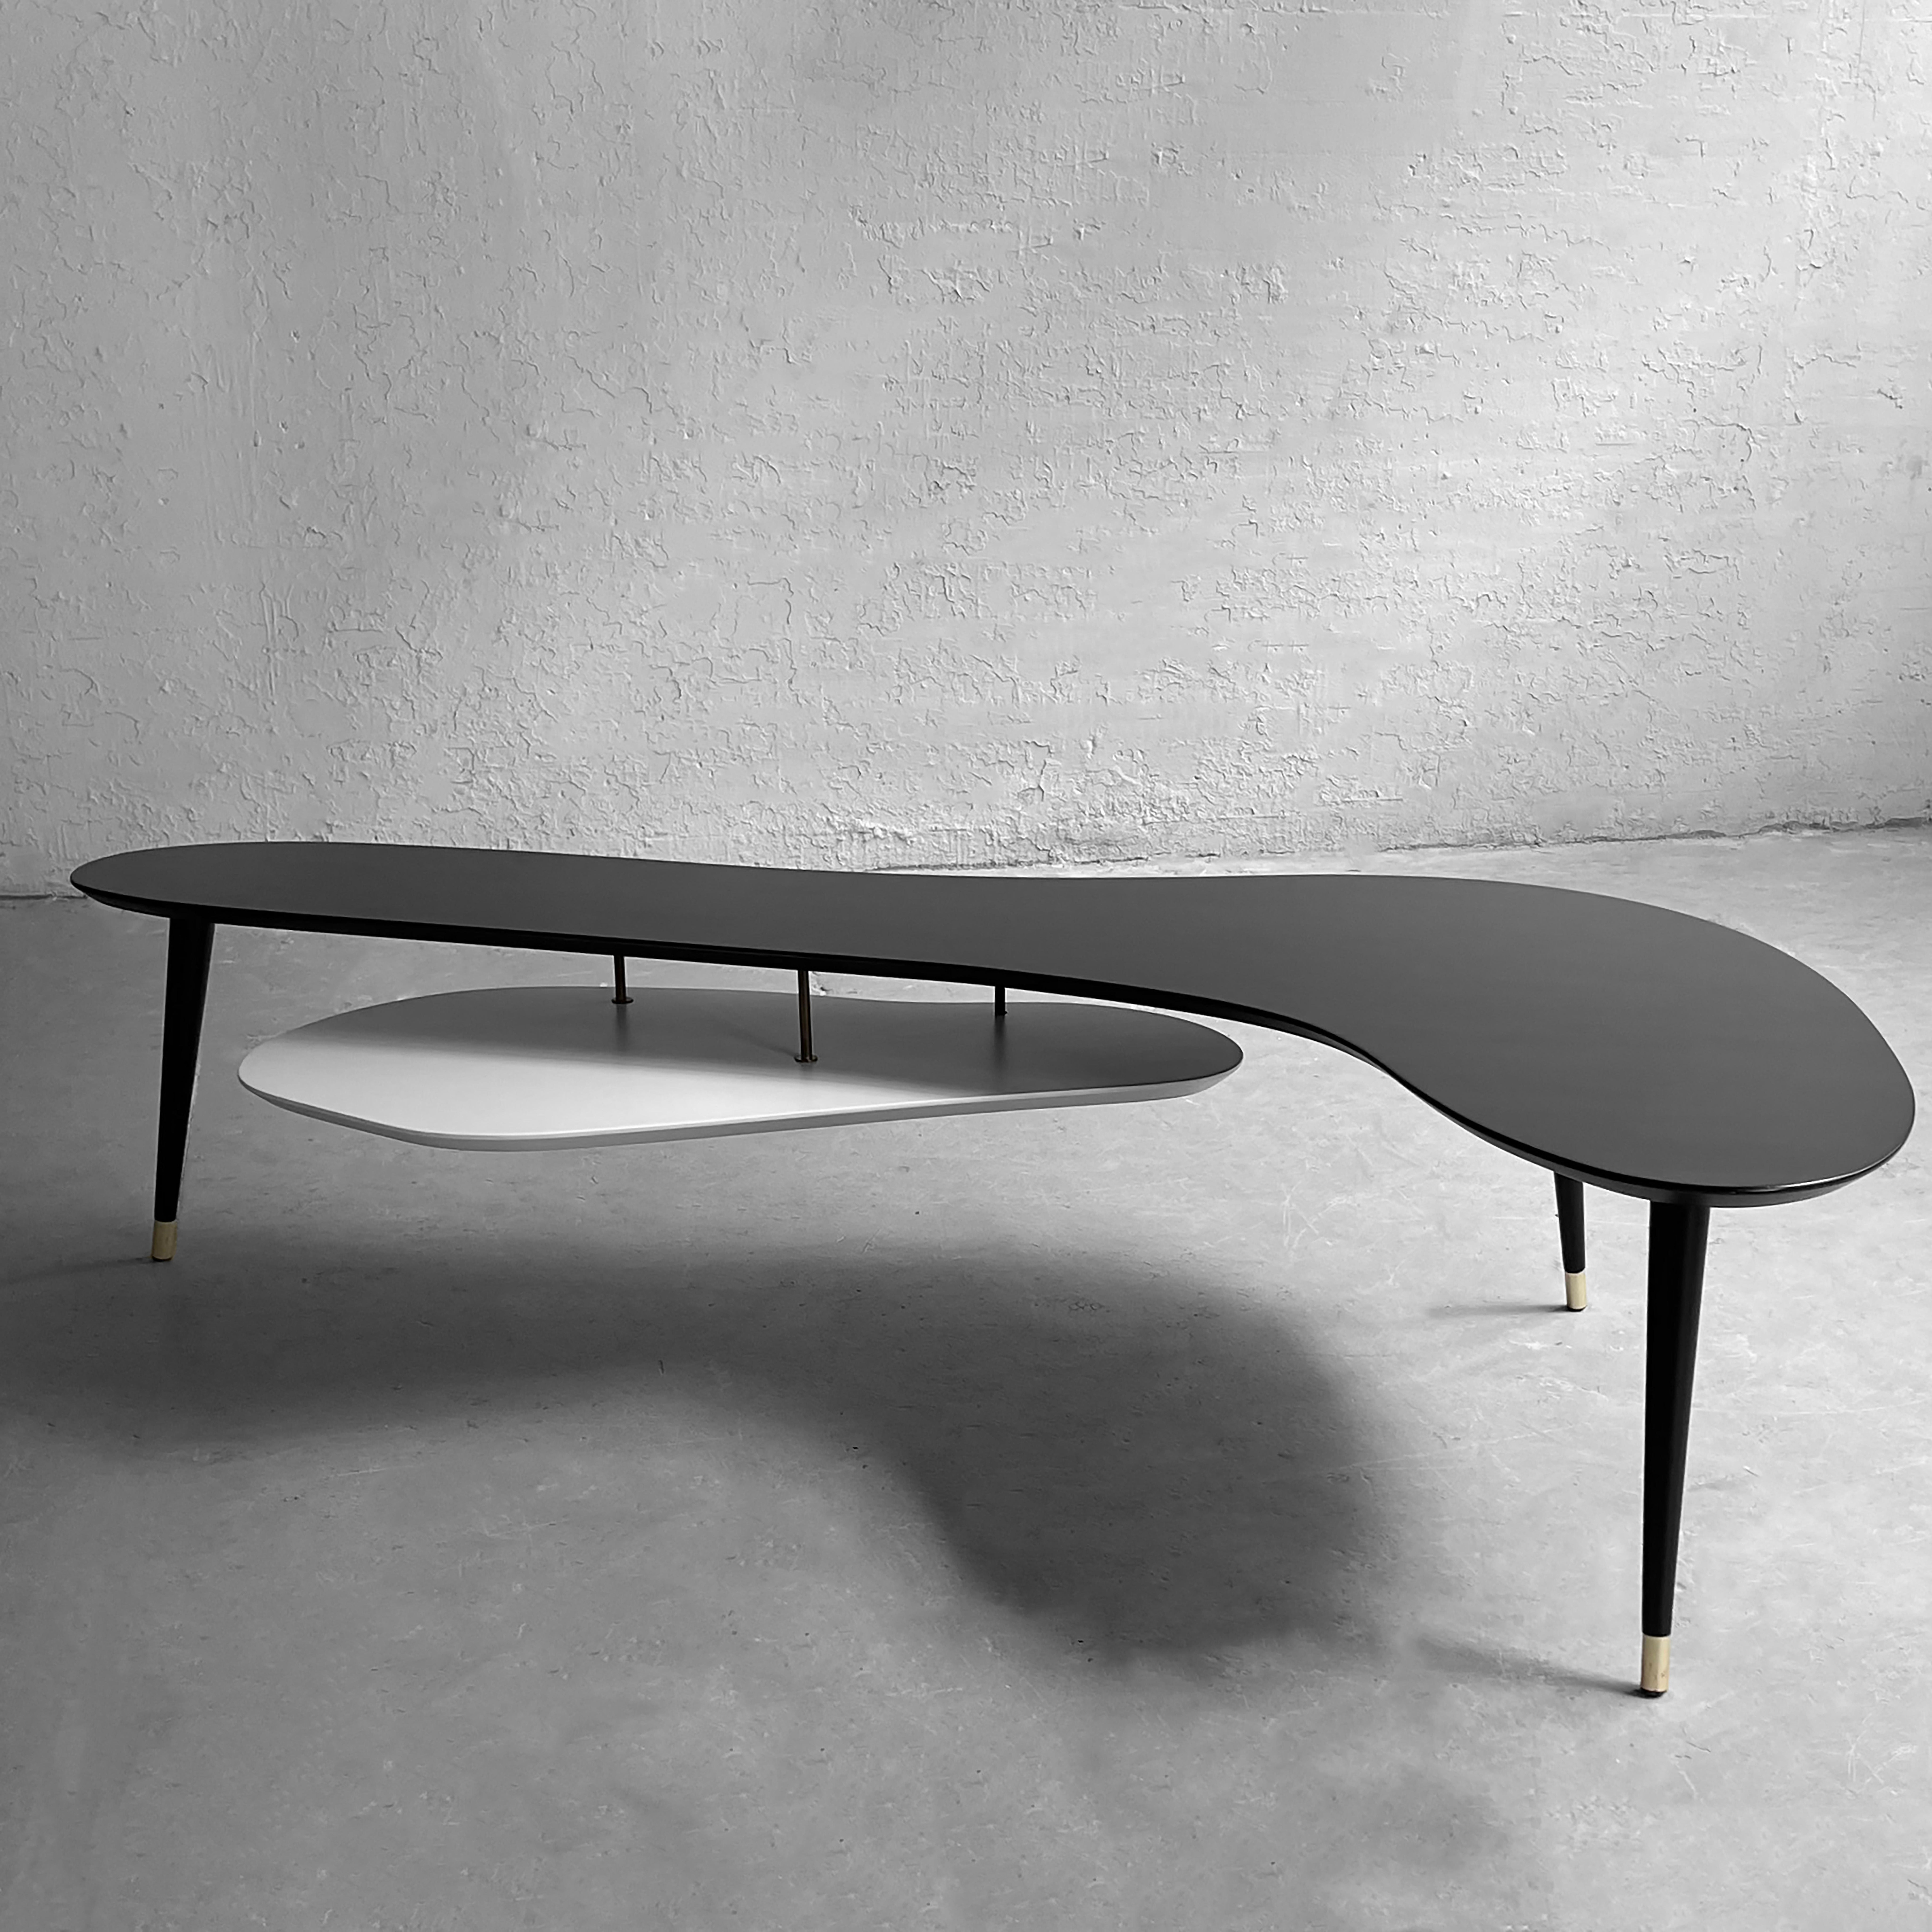 La table basse biomorphique de James-Philip Co., de style moderne du milieu du siècle, présente des gradins entrecroisés en bois laqué noir et blanc reliés par des tiges en laiton et des pieds effilés en laiton.